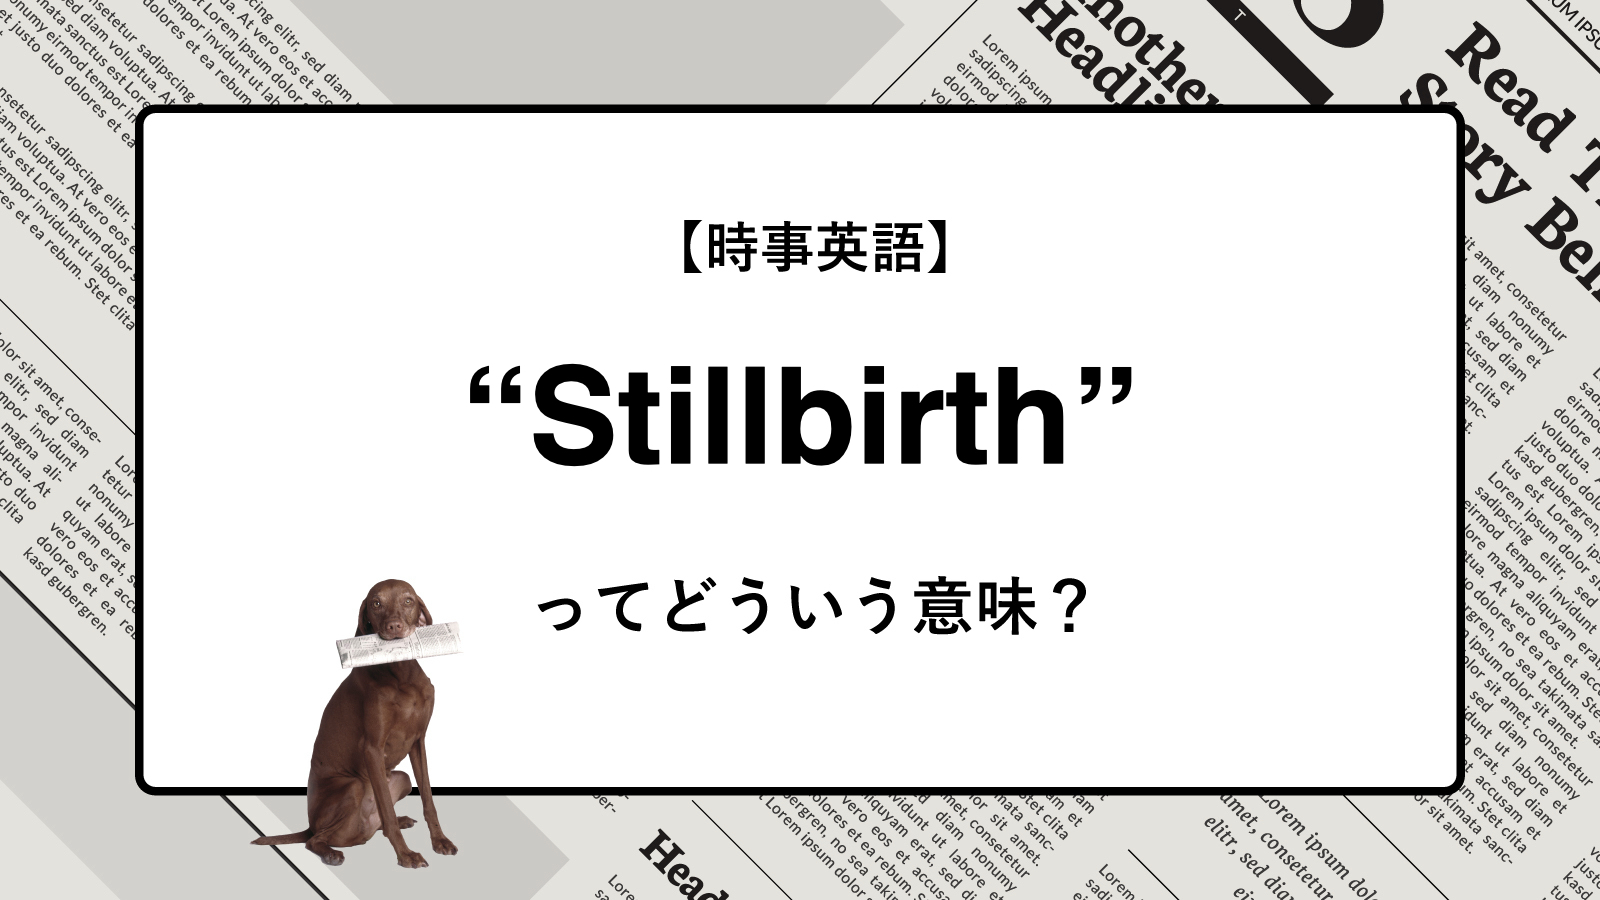 【時事英語】“Stillbirth” ってどういう意味？ | ニュースの「キーワード」で語彙力を身につける